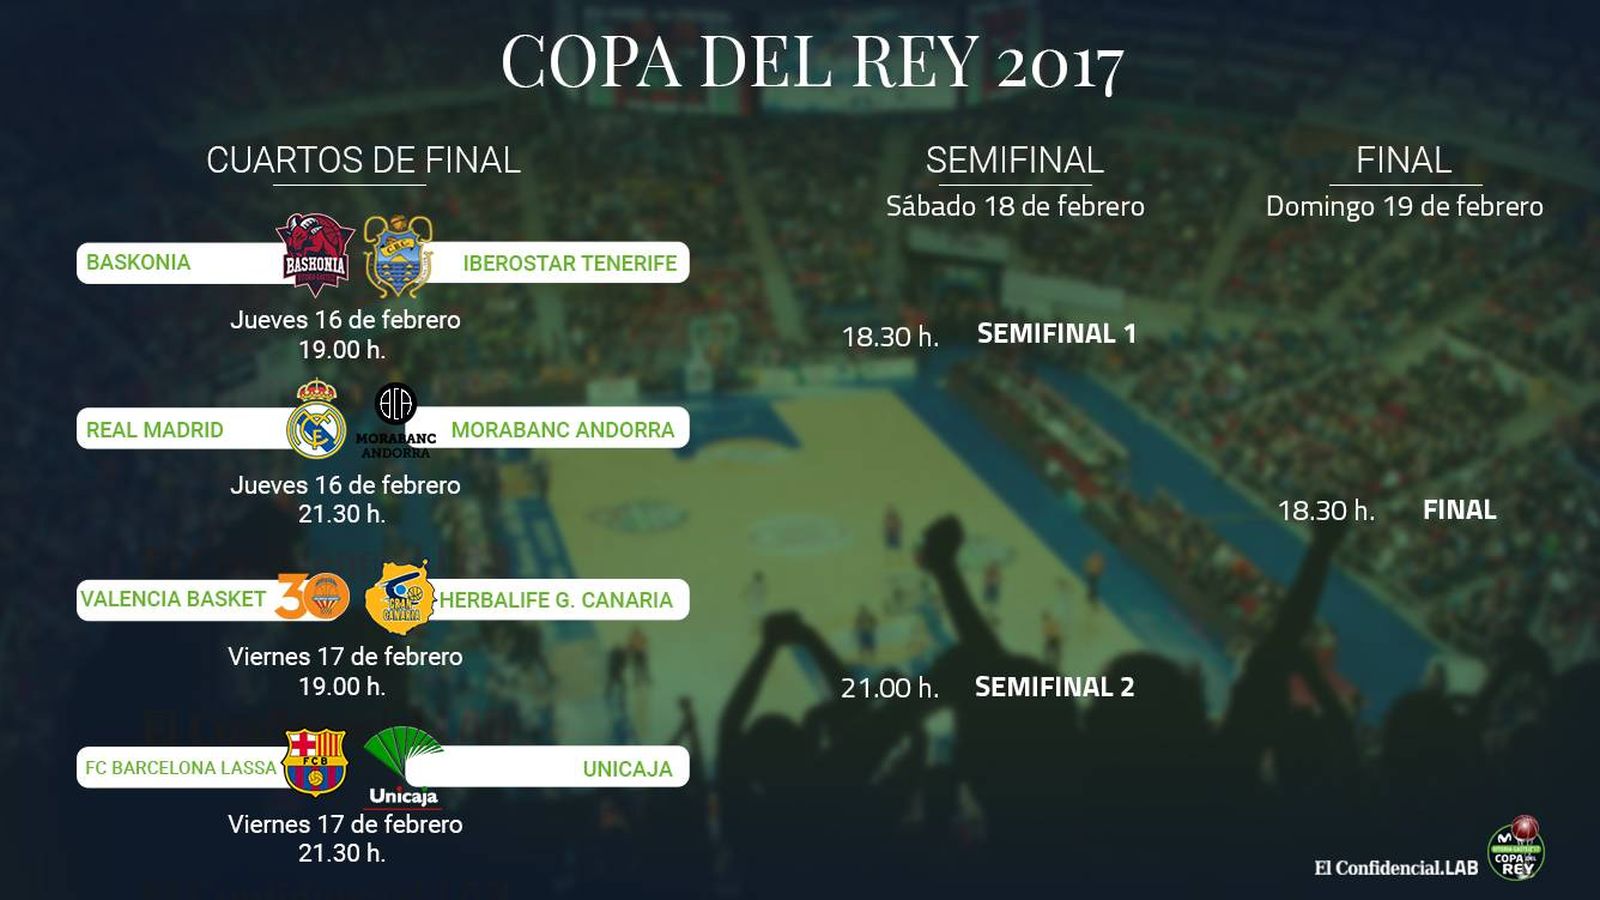 Foto: Cuadro de la Copa del Rey ACB 2017.